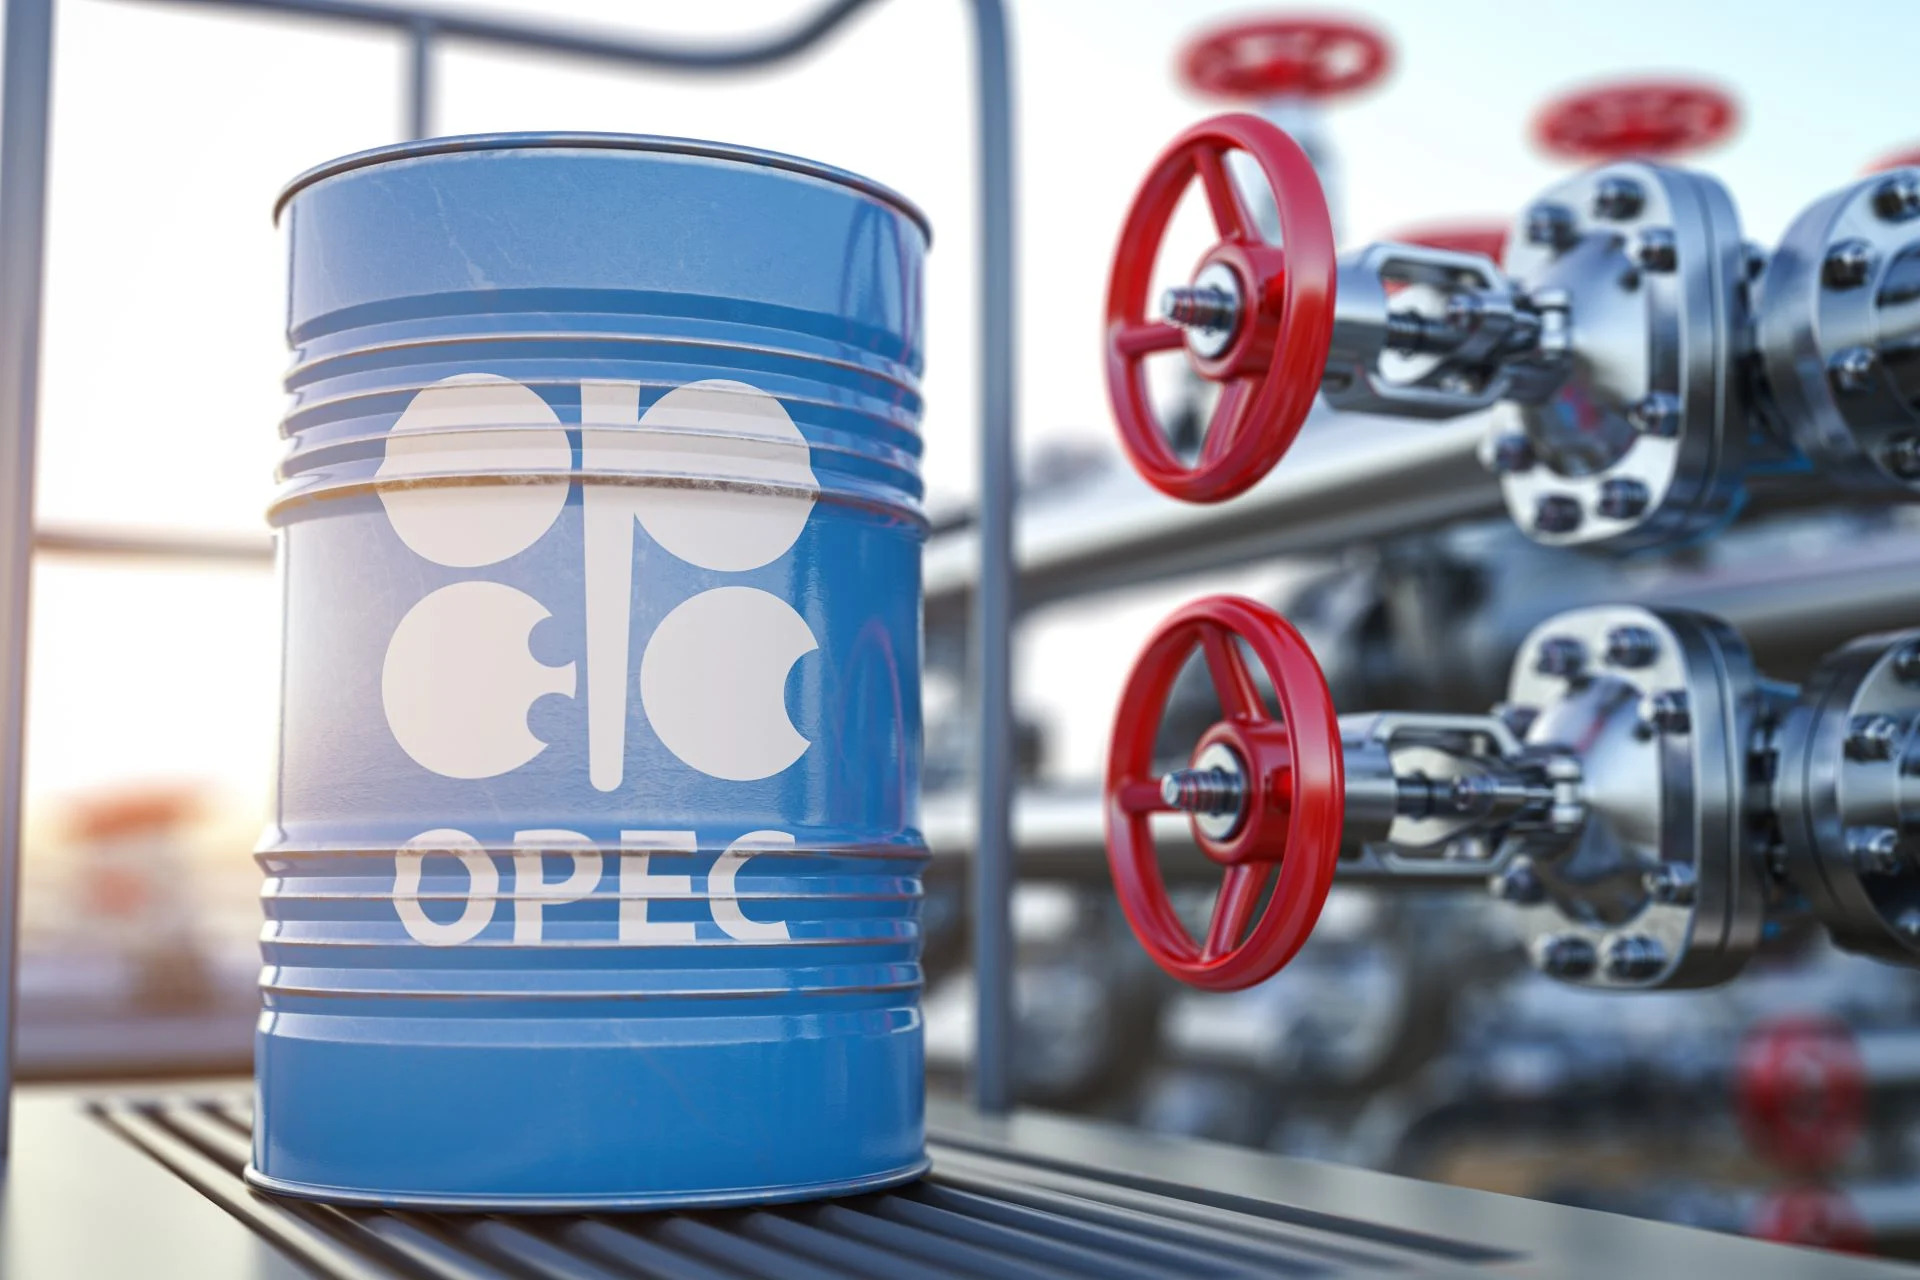 Πετρέλαιο: Σε εγρήγορση αγορές και κεντρικές τράπεζες από την ανακοίνωση του ΟΠΕΚ+ για μείωση της παραγωγής